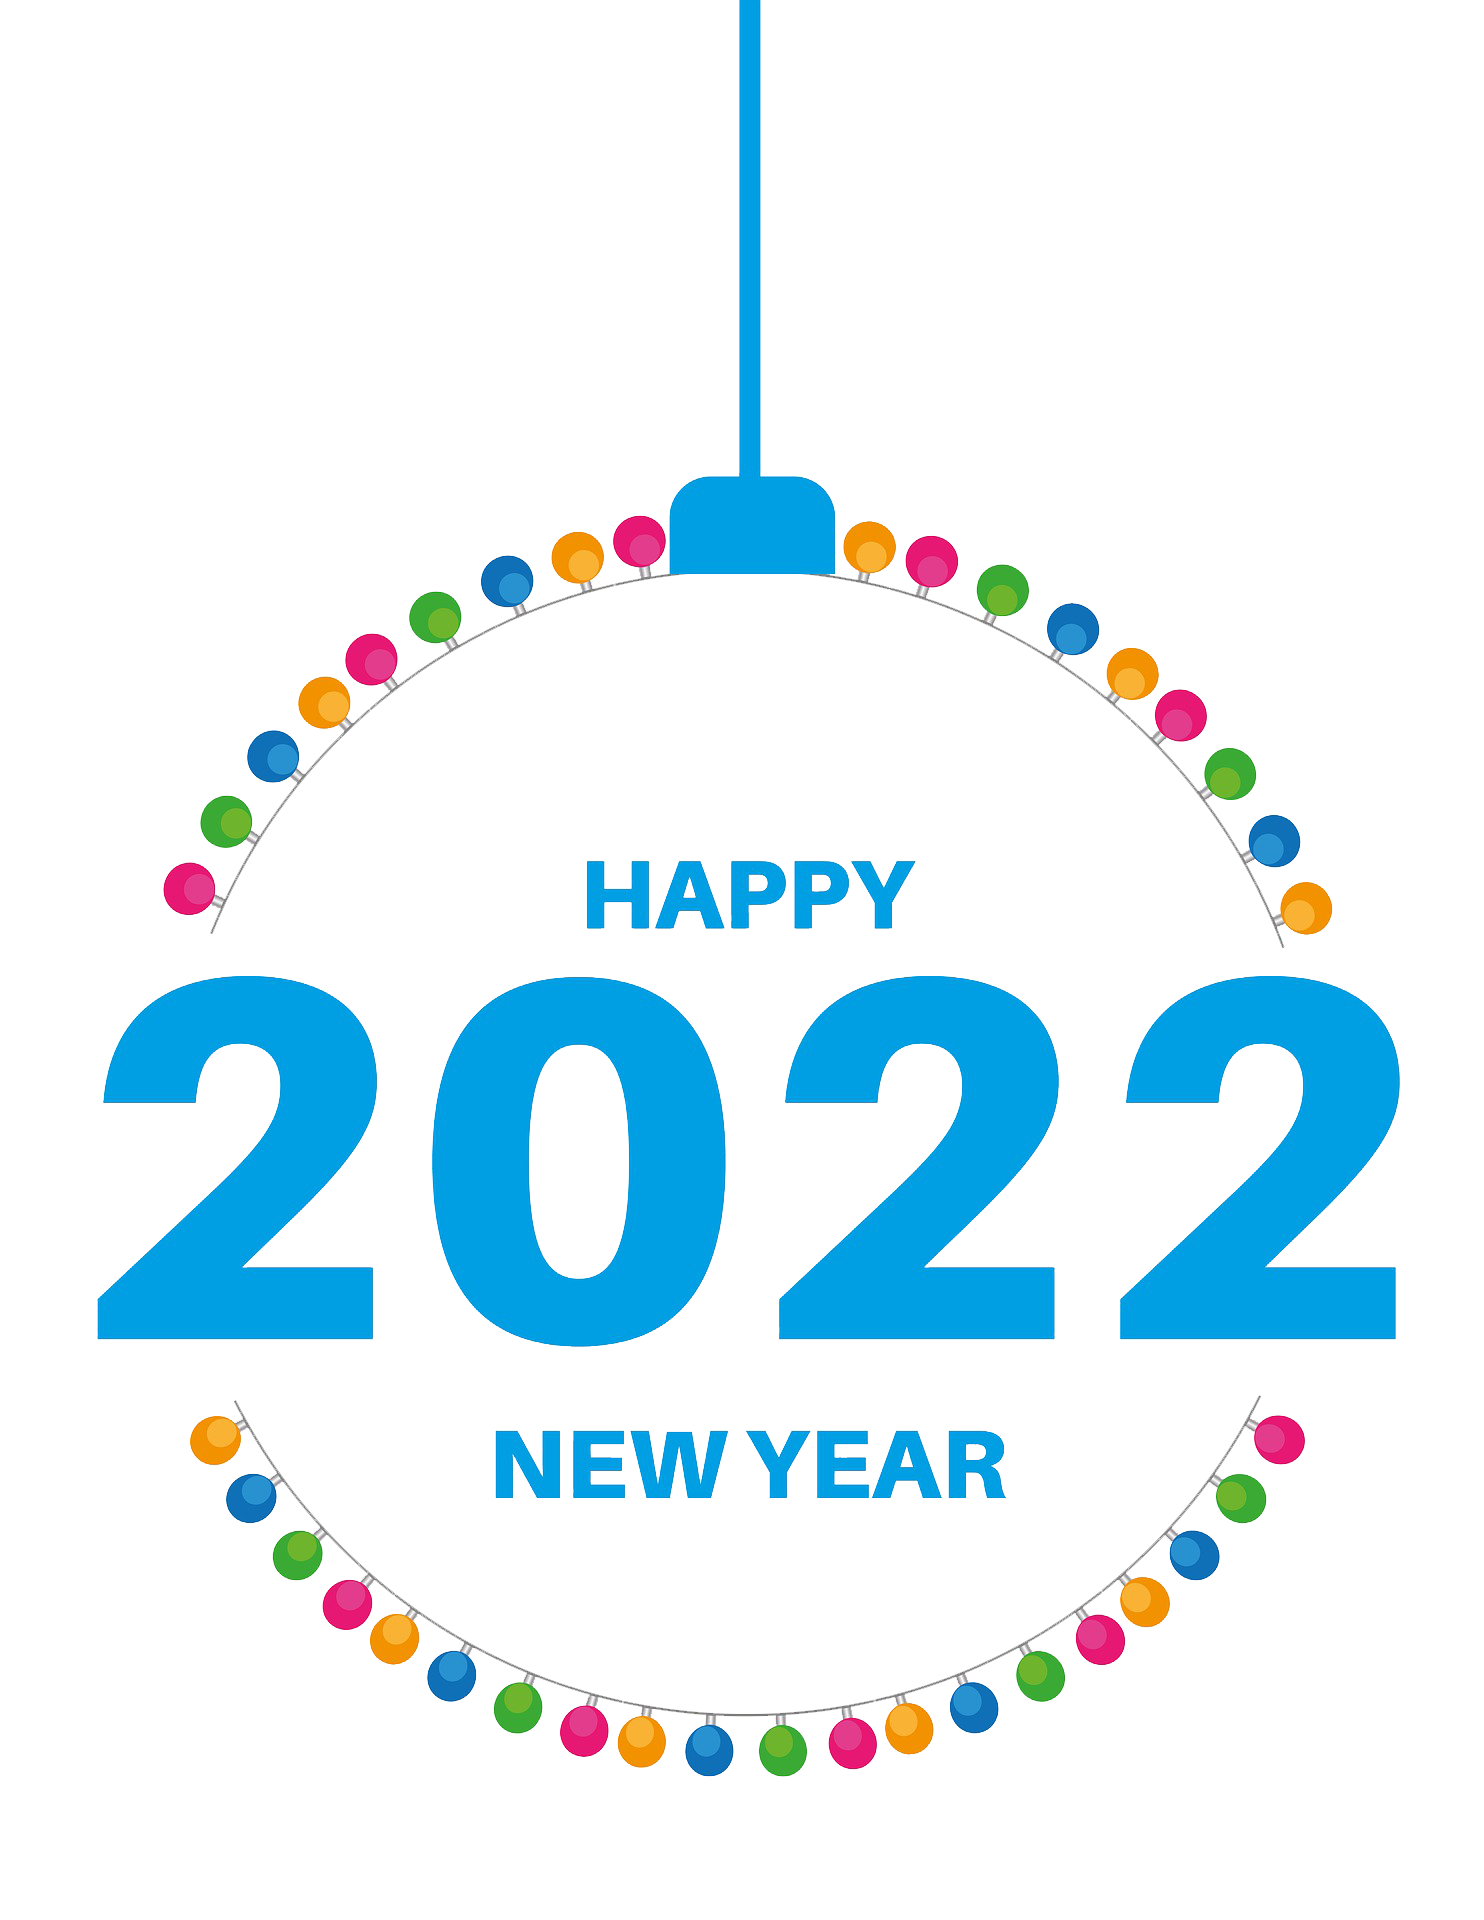 Le jour de l'an et le jour de l'an en 2022